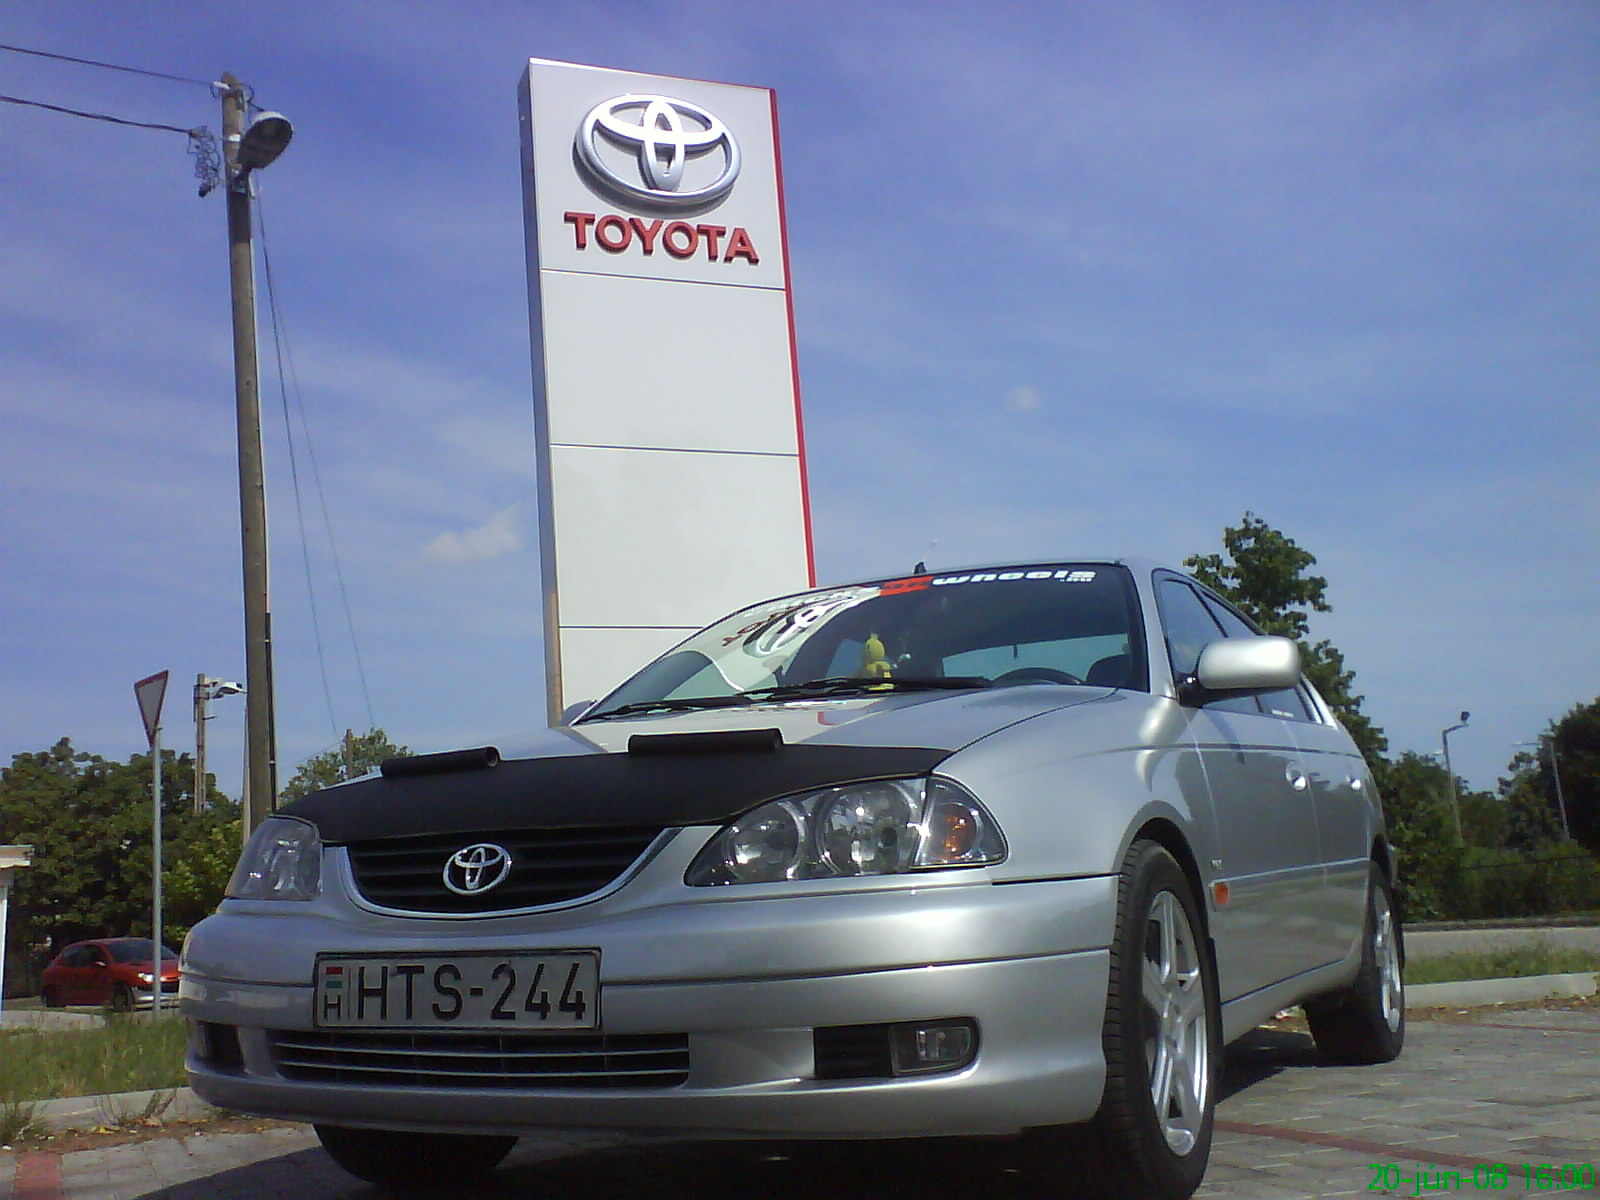 Toyota Avensis (olajgomba)